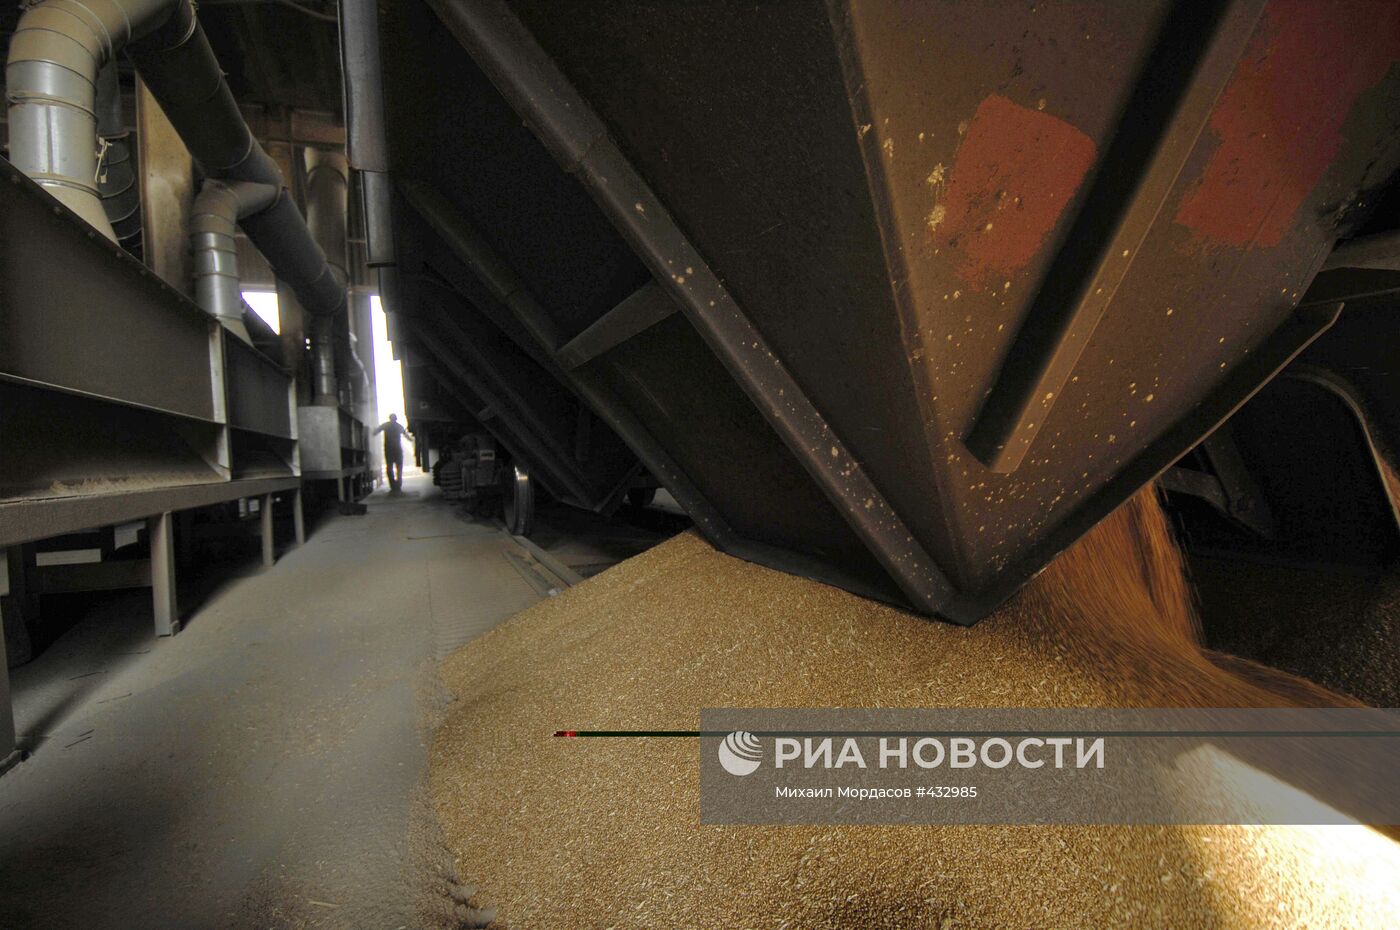 Работа зернового терминала в порту Новороссийска